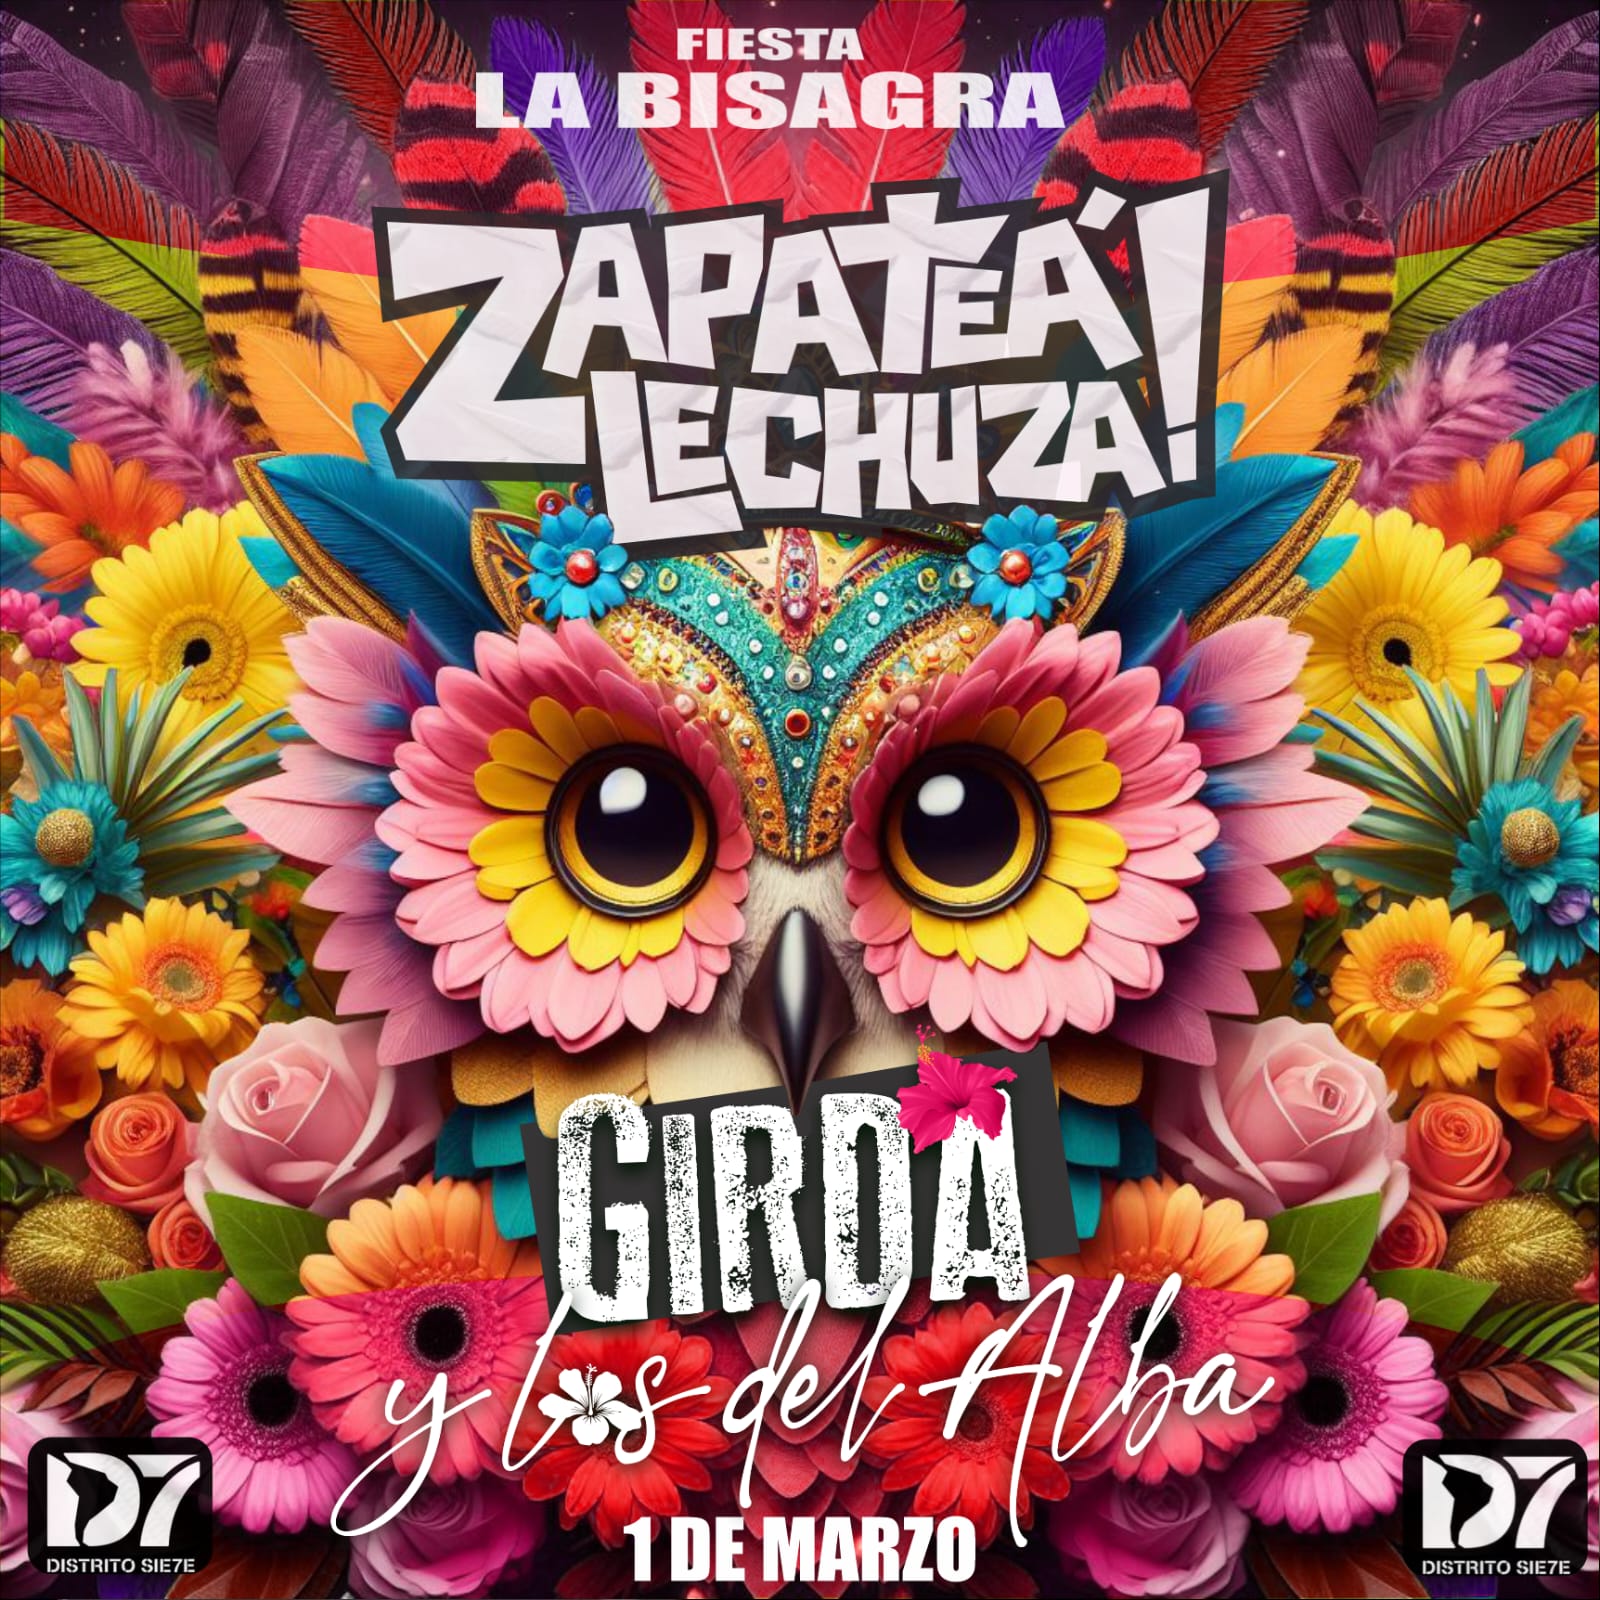 Fiesta LA BISAGRA! Zapateá Lechuza + Girda y los del Alba